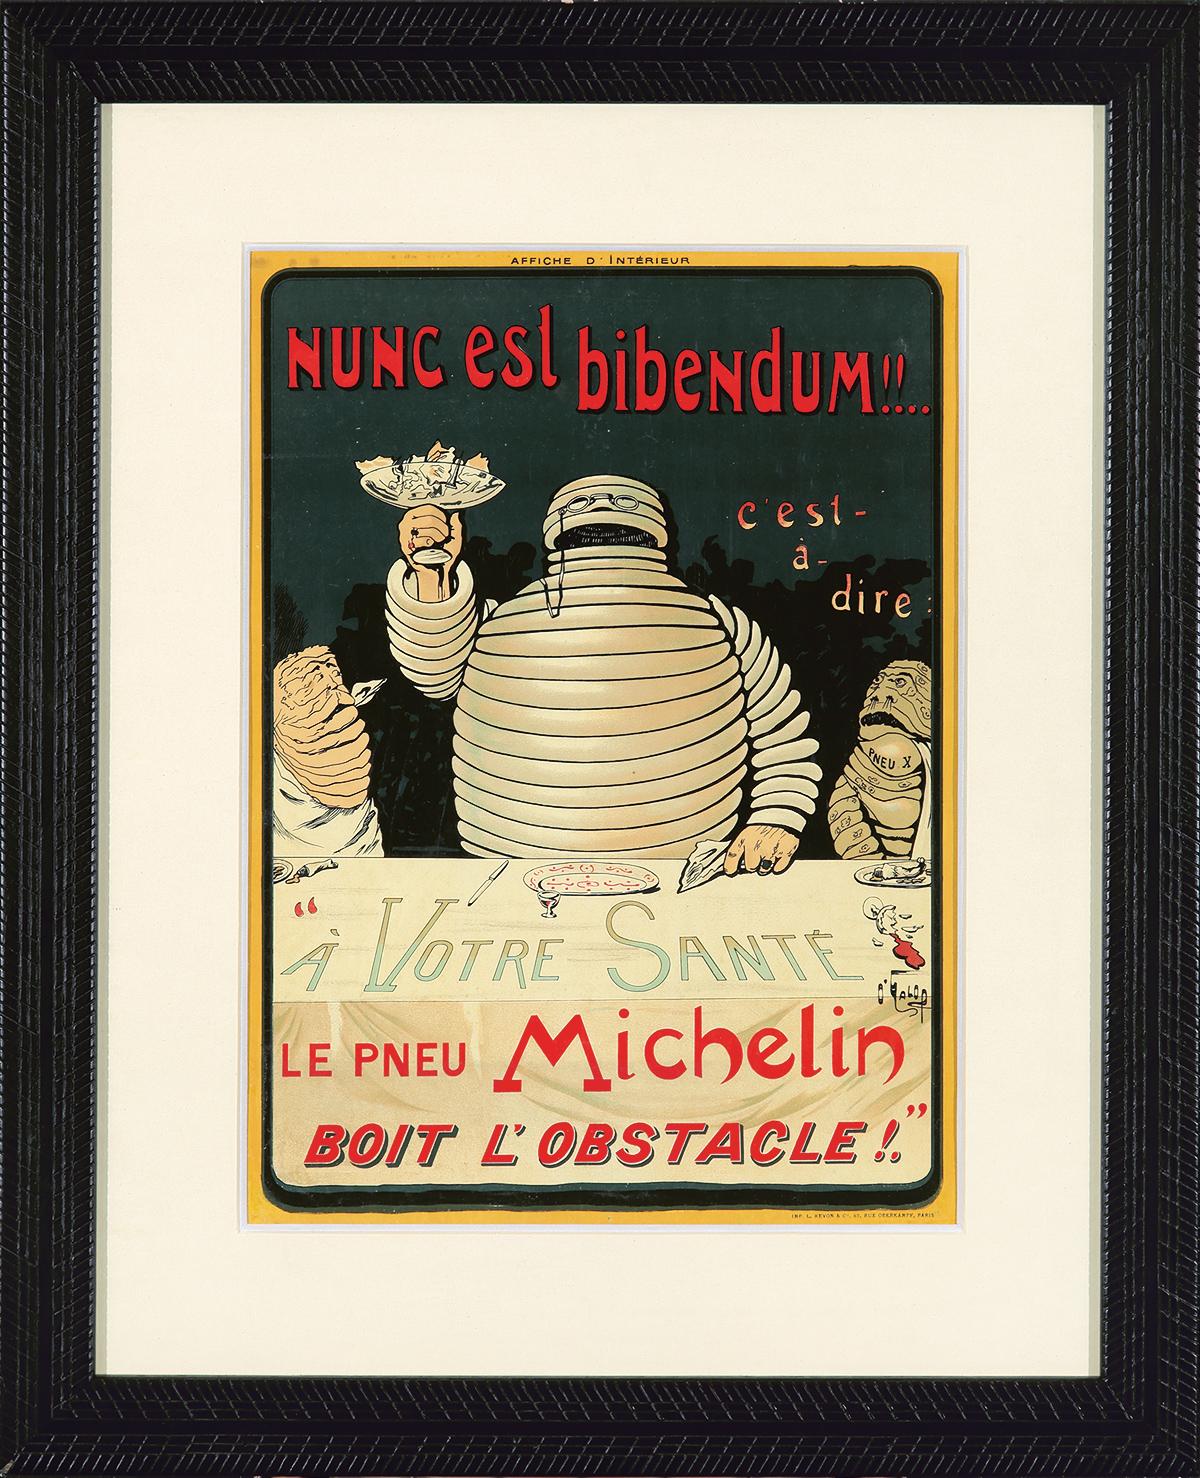 Le Pneu Michelin / Nunc est bibendum. 1898. | Poster Auctions ...